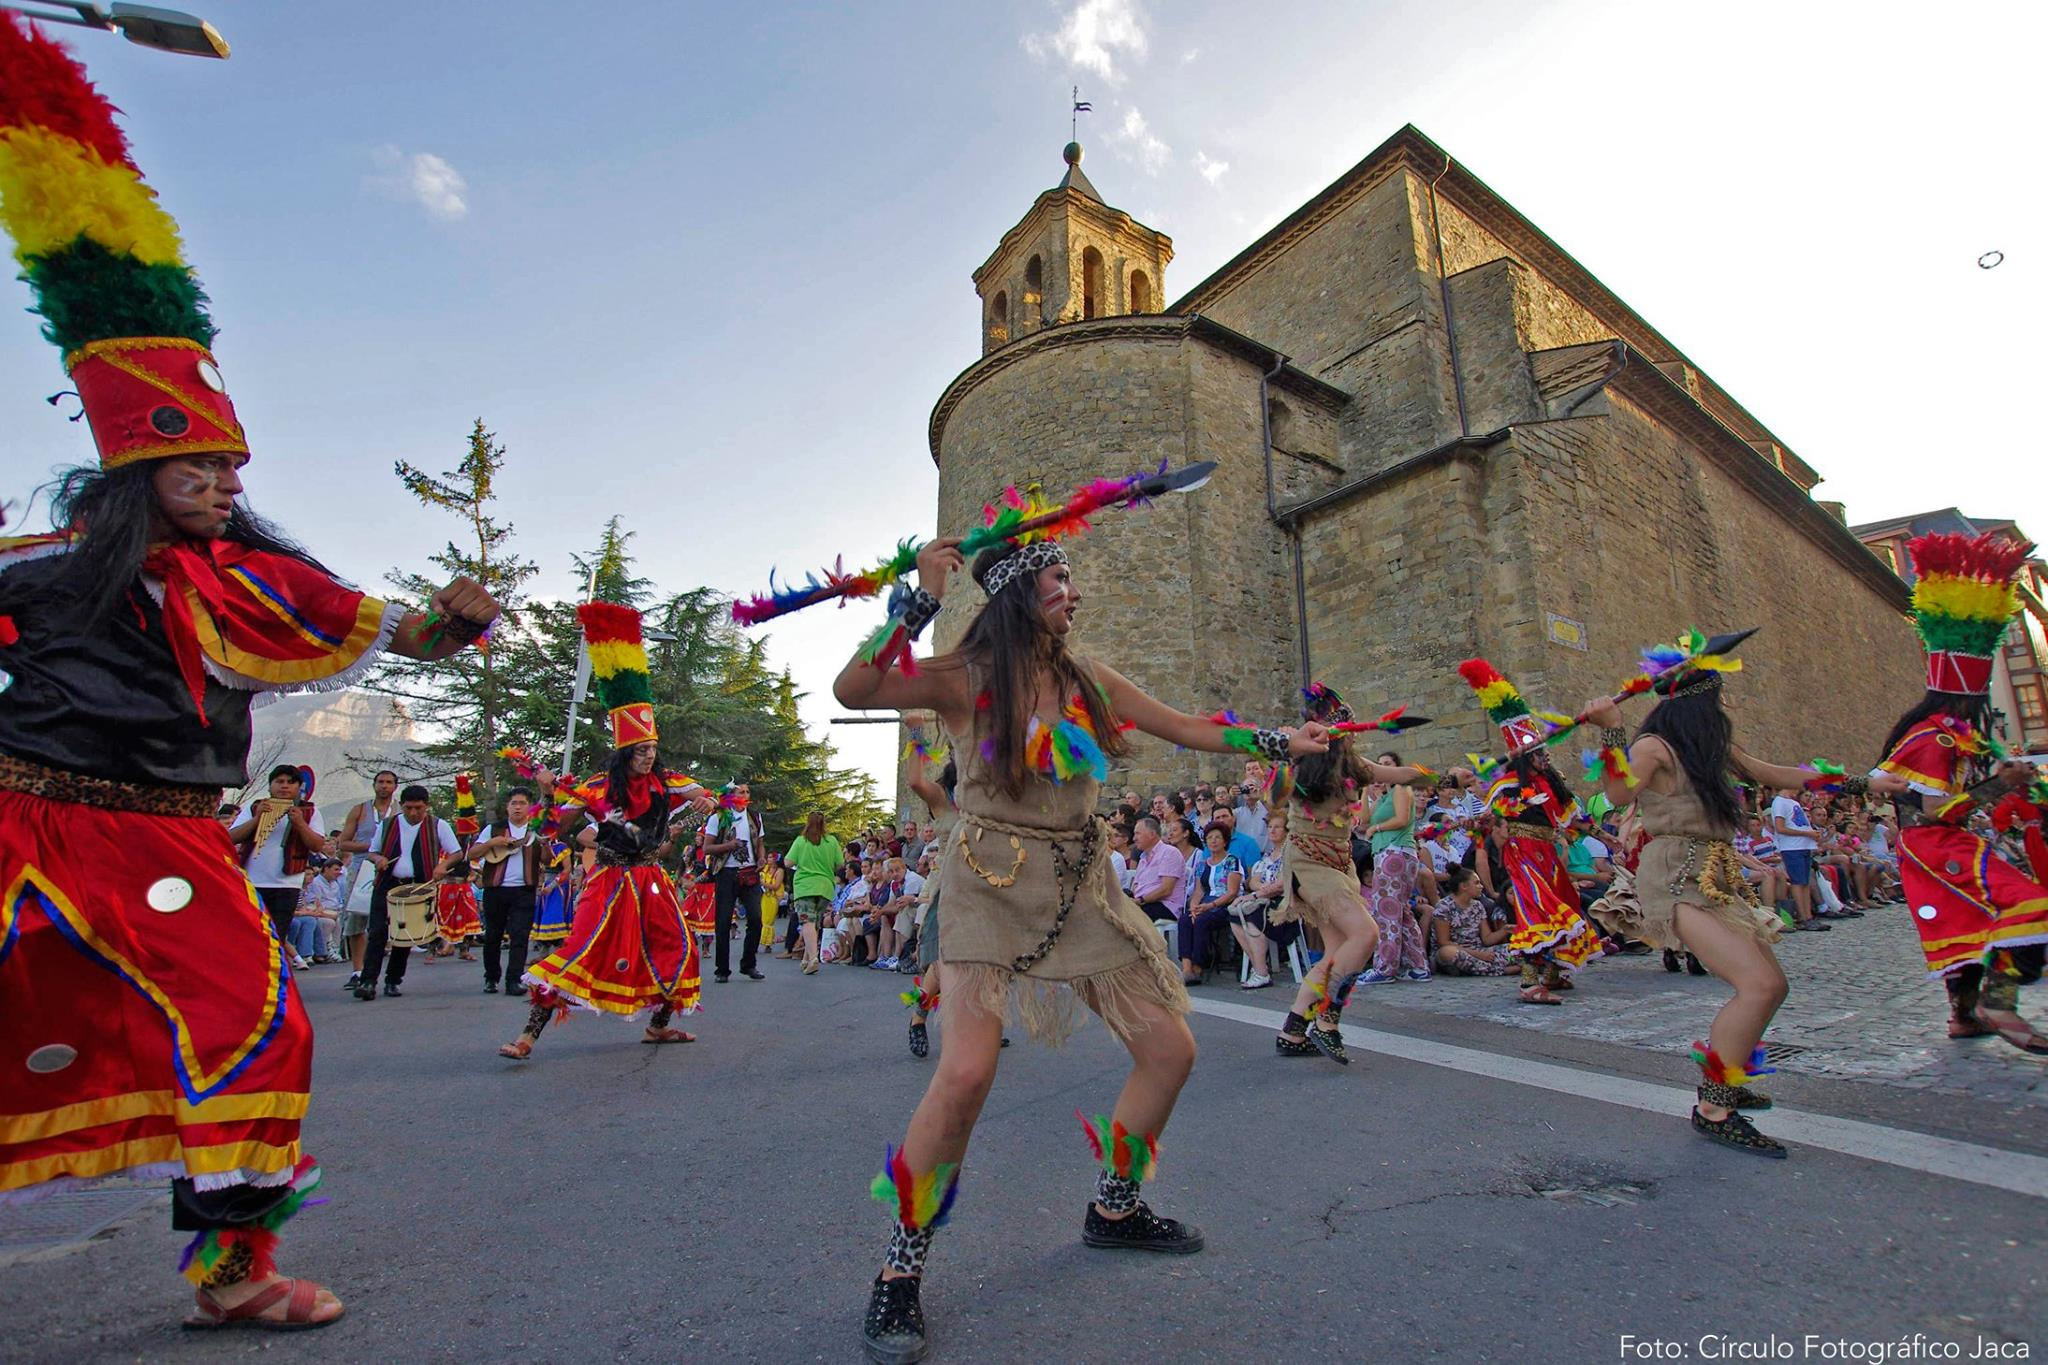 Ven a disfrutar del Festival Folklórico de los Pirineos de Jaca 🗿💃🎎 ¡Una escapa inolvidable!